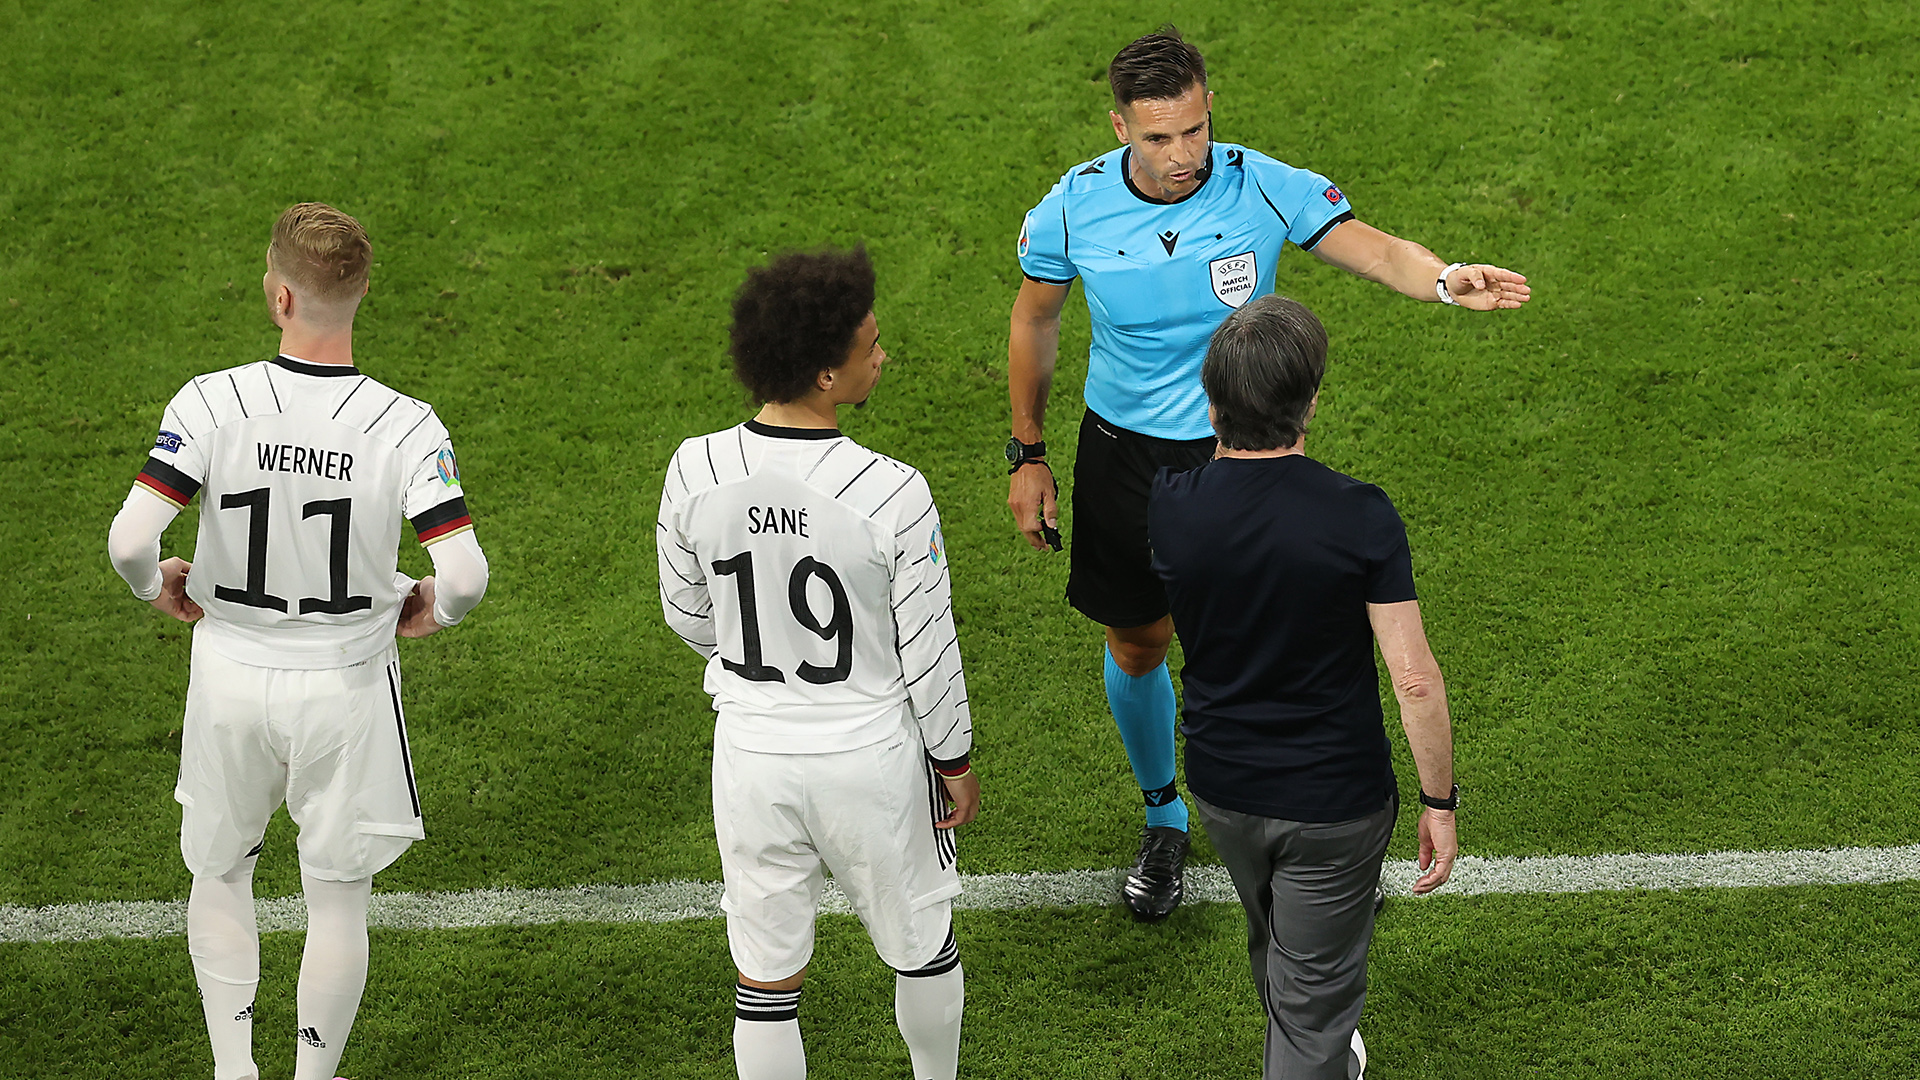 Die Spieler Werner und Sané, Löw und der Schiedsrichter der Partie Deutschland gegen Frankreich. | EPA